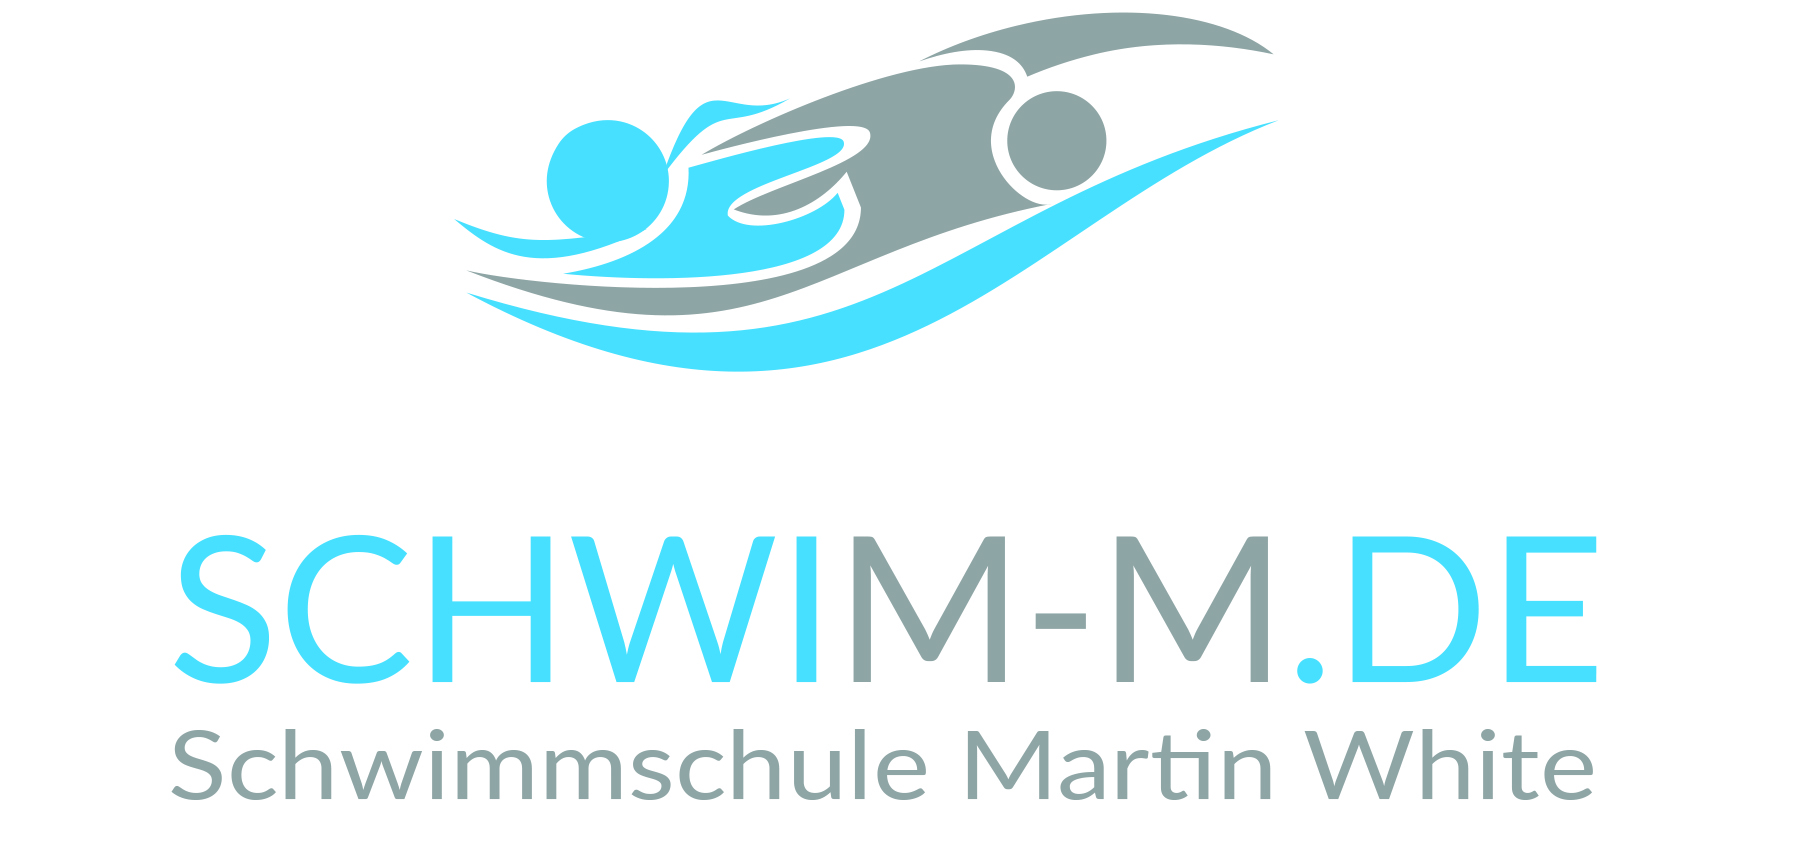 Martin White von Schwim-m